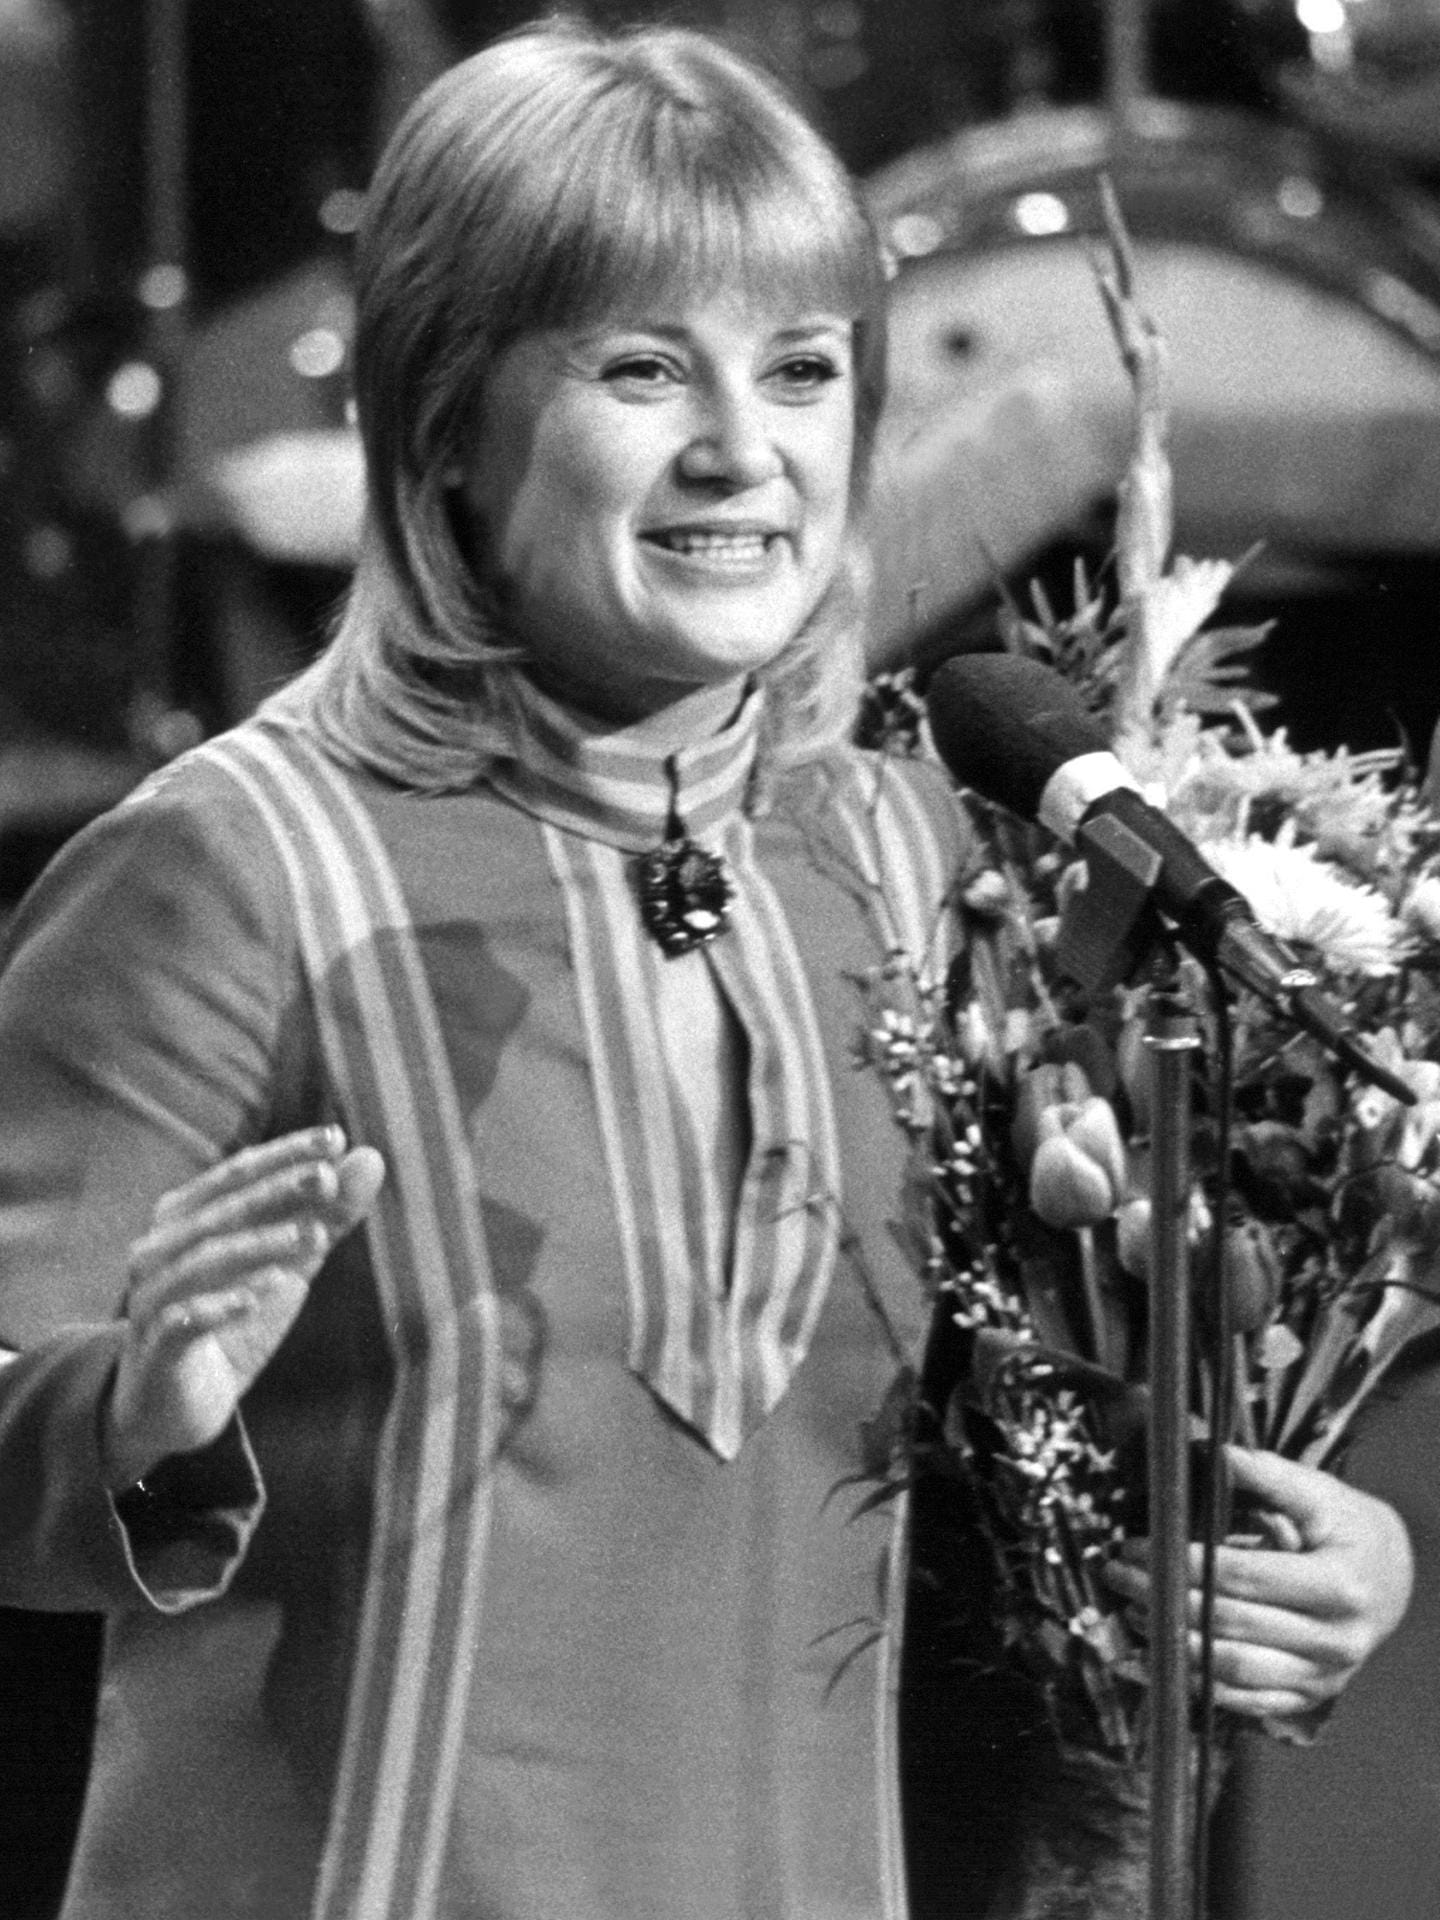 1973: Gitte holt für Deutschland 85 Punkte und belegt den 8. Platz